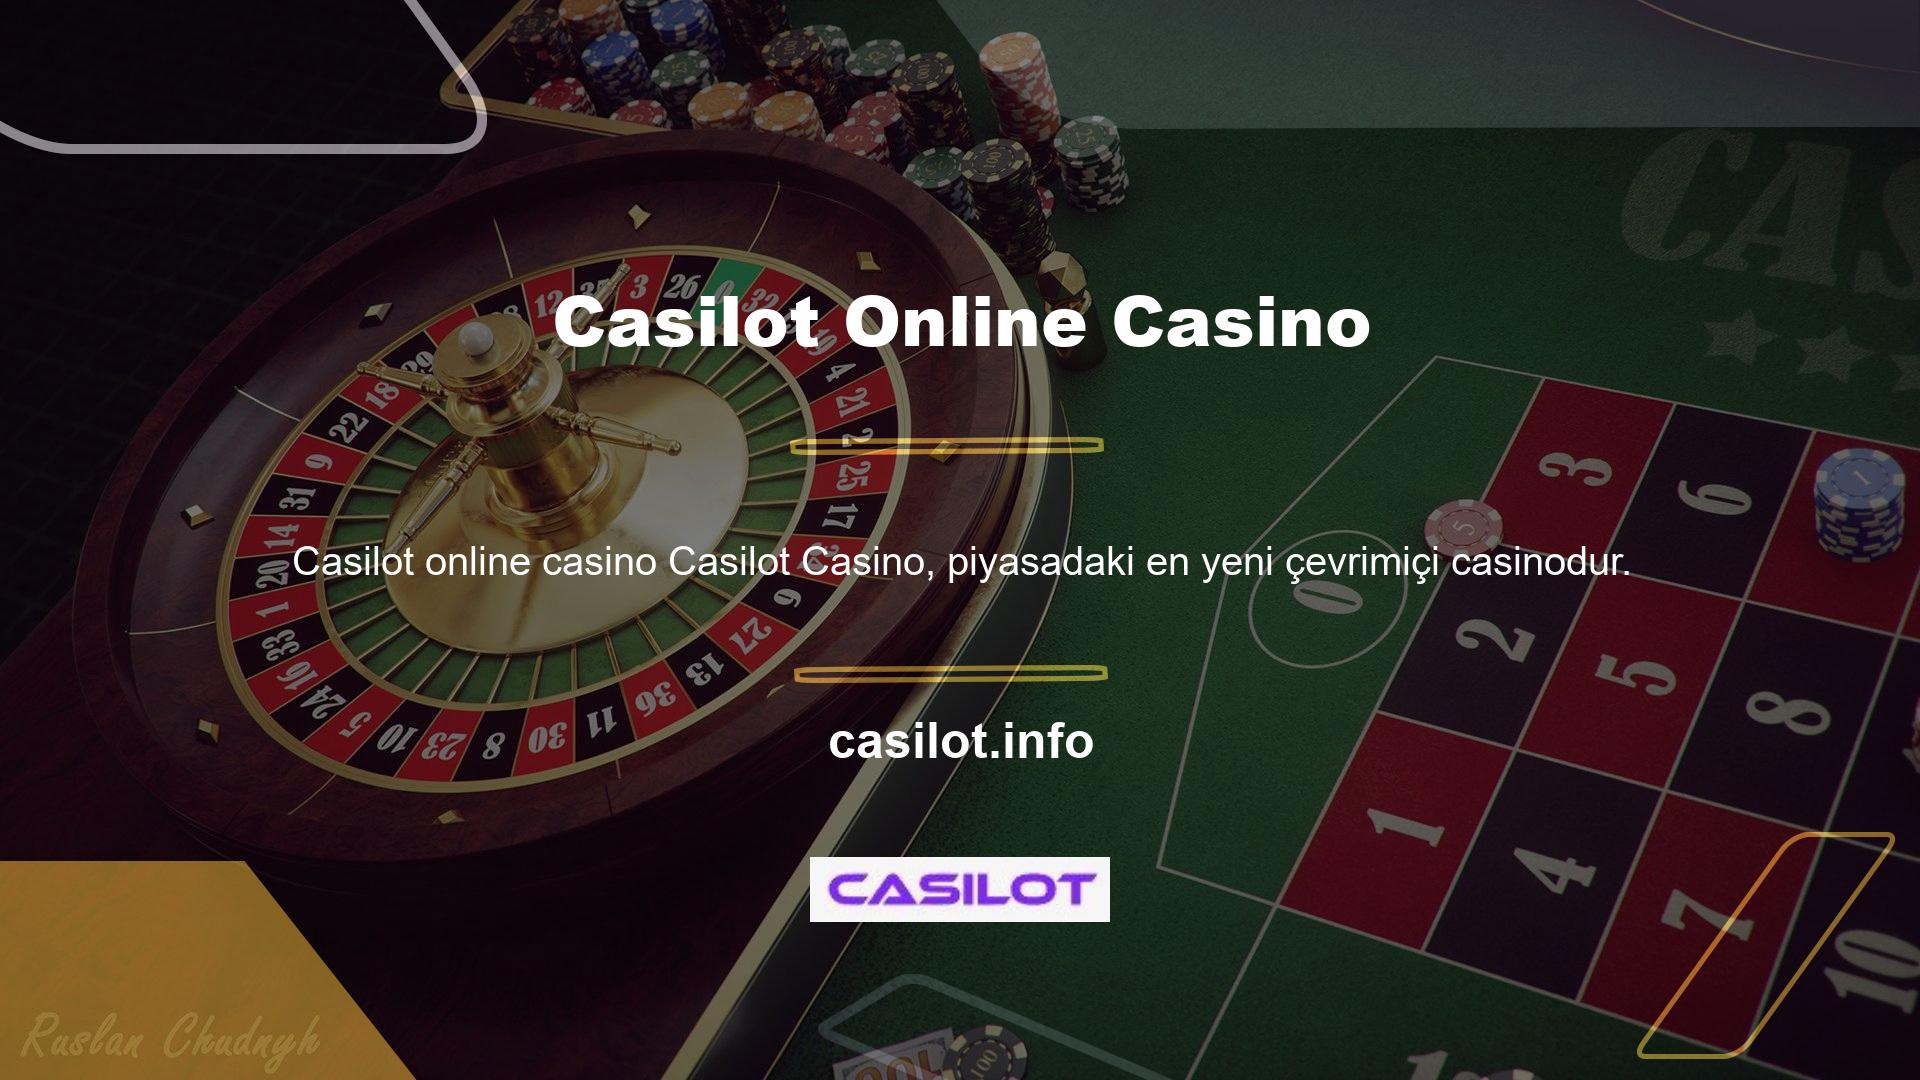 Çok çeşitli oyunlar, mükemmel müşteri hizmetleri ve hızlı ödemelerle bu casino, birinci sınıf bir deneyim arayan oyuncular için mükemmeldir